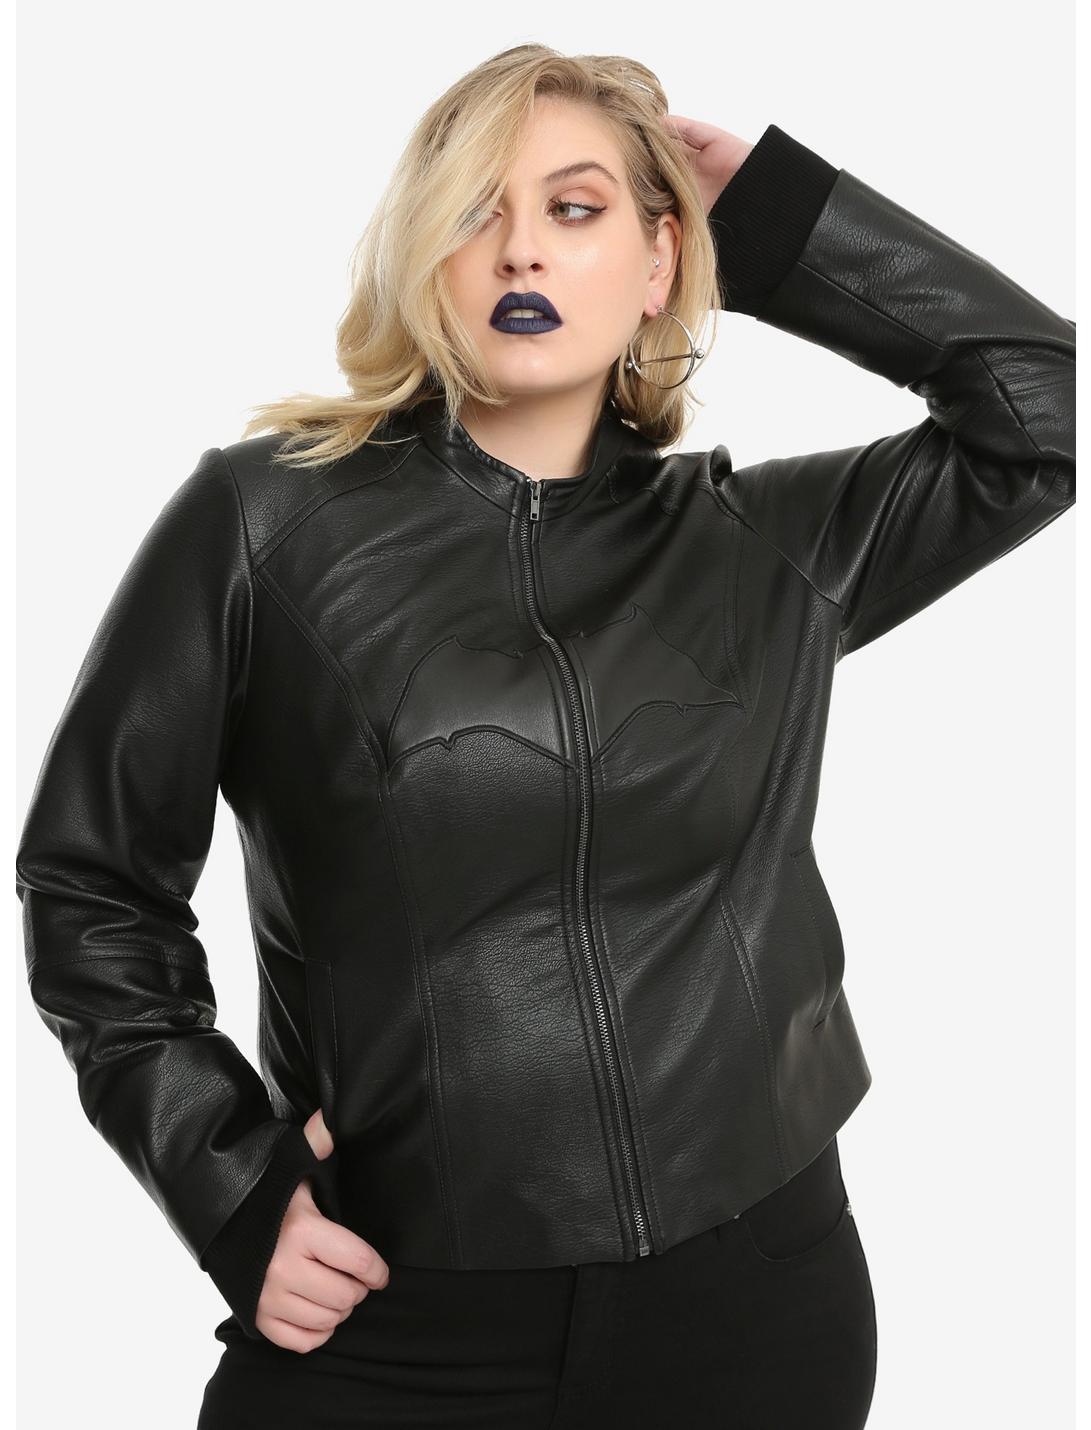 DC Comics Justice League Batman Faux Leather Girls Jacket Plus Size, MULTI, hi-res